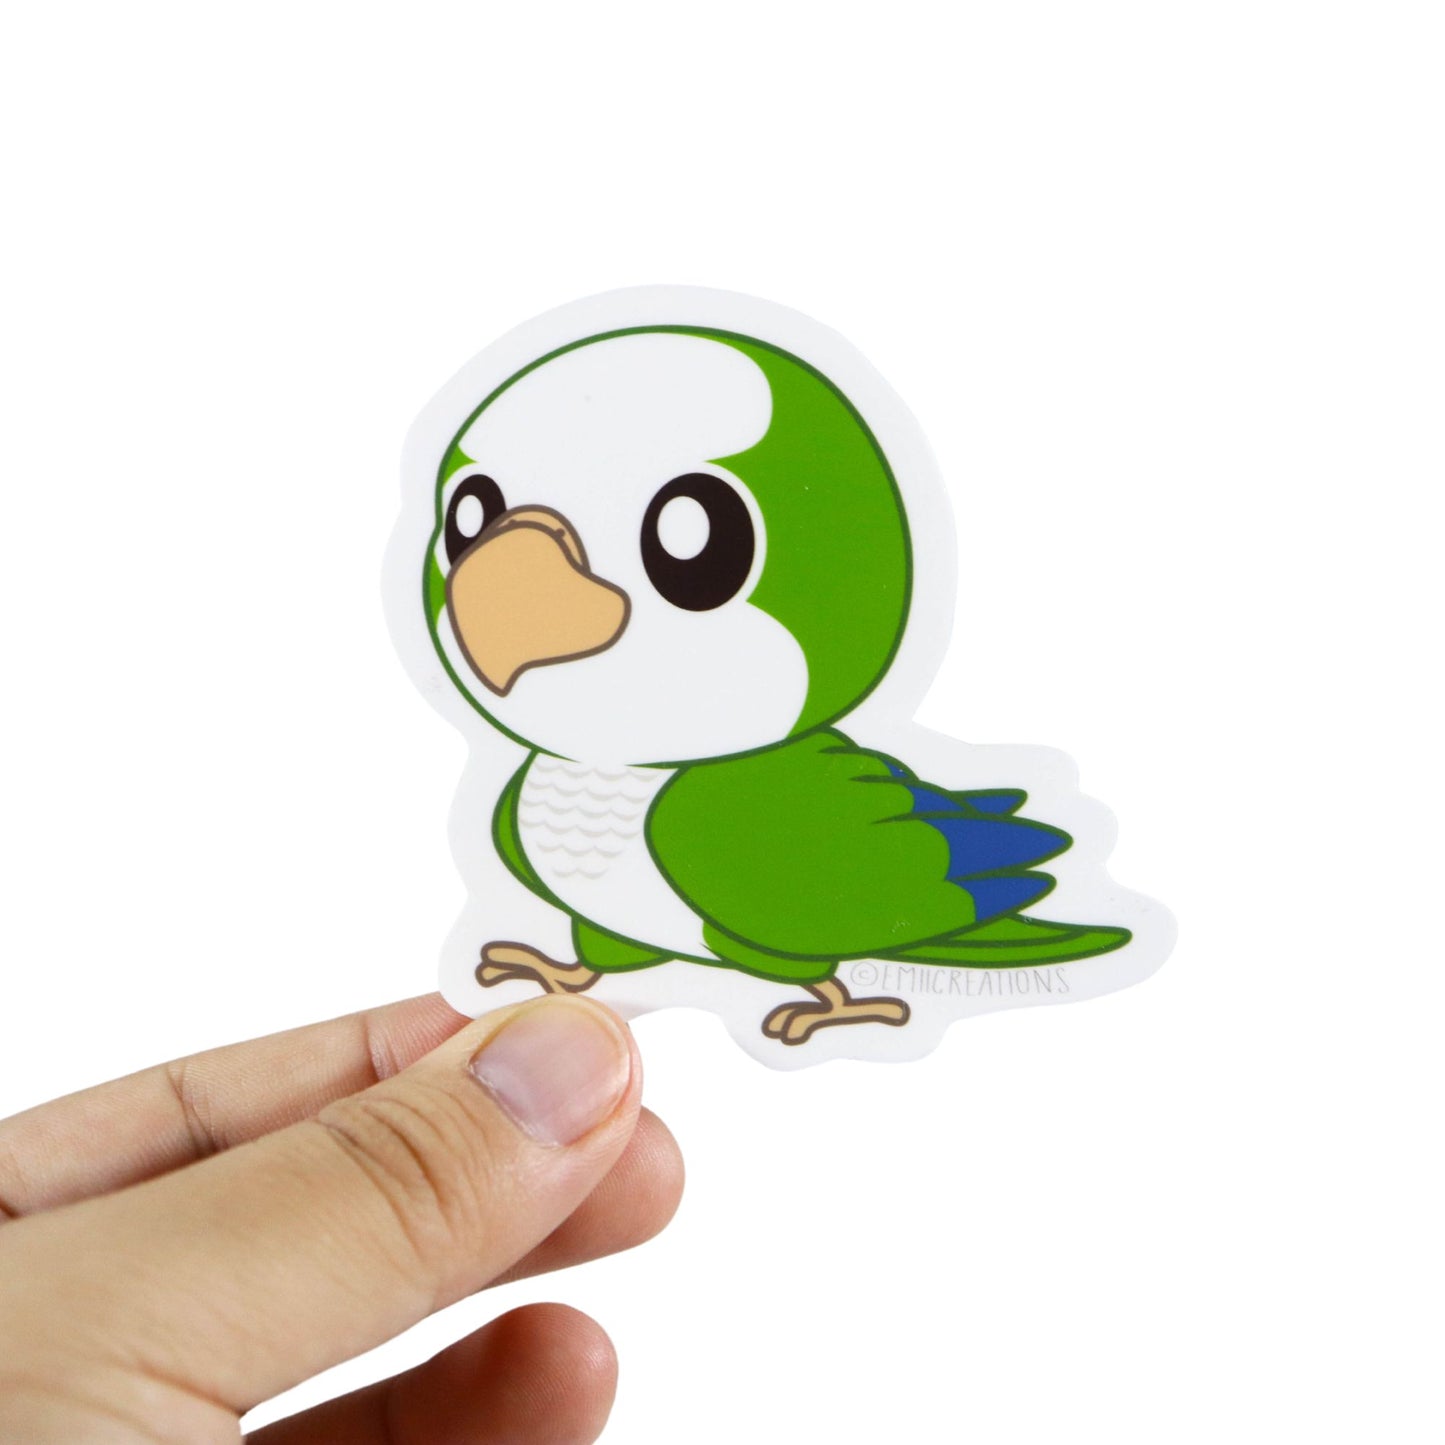 Green Quaker Parrot Sticker